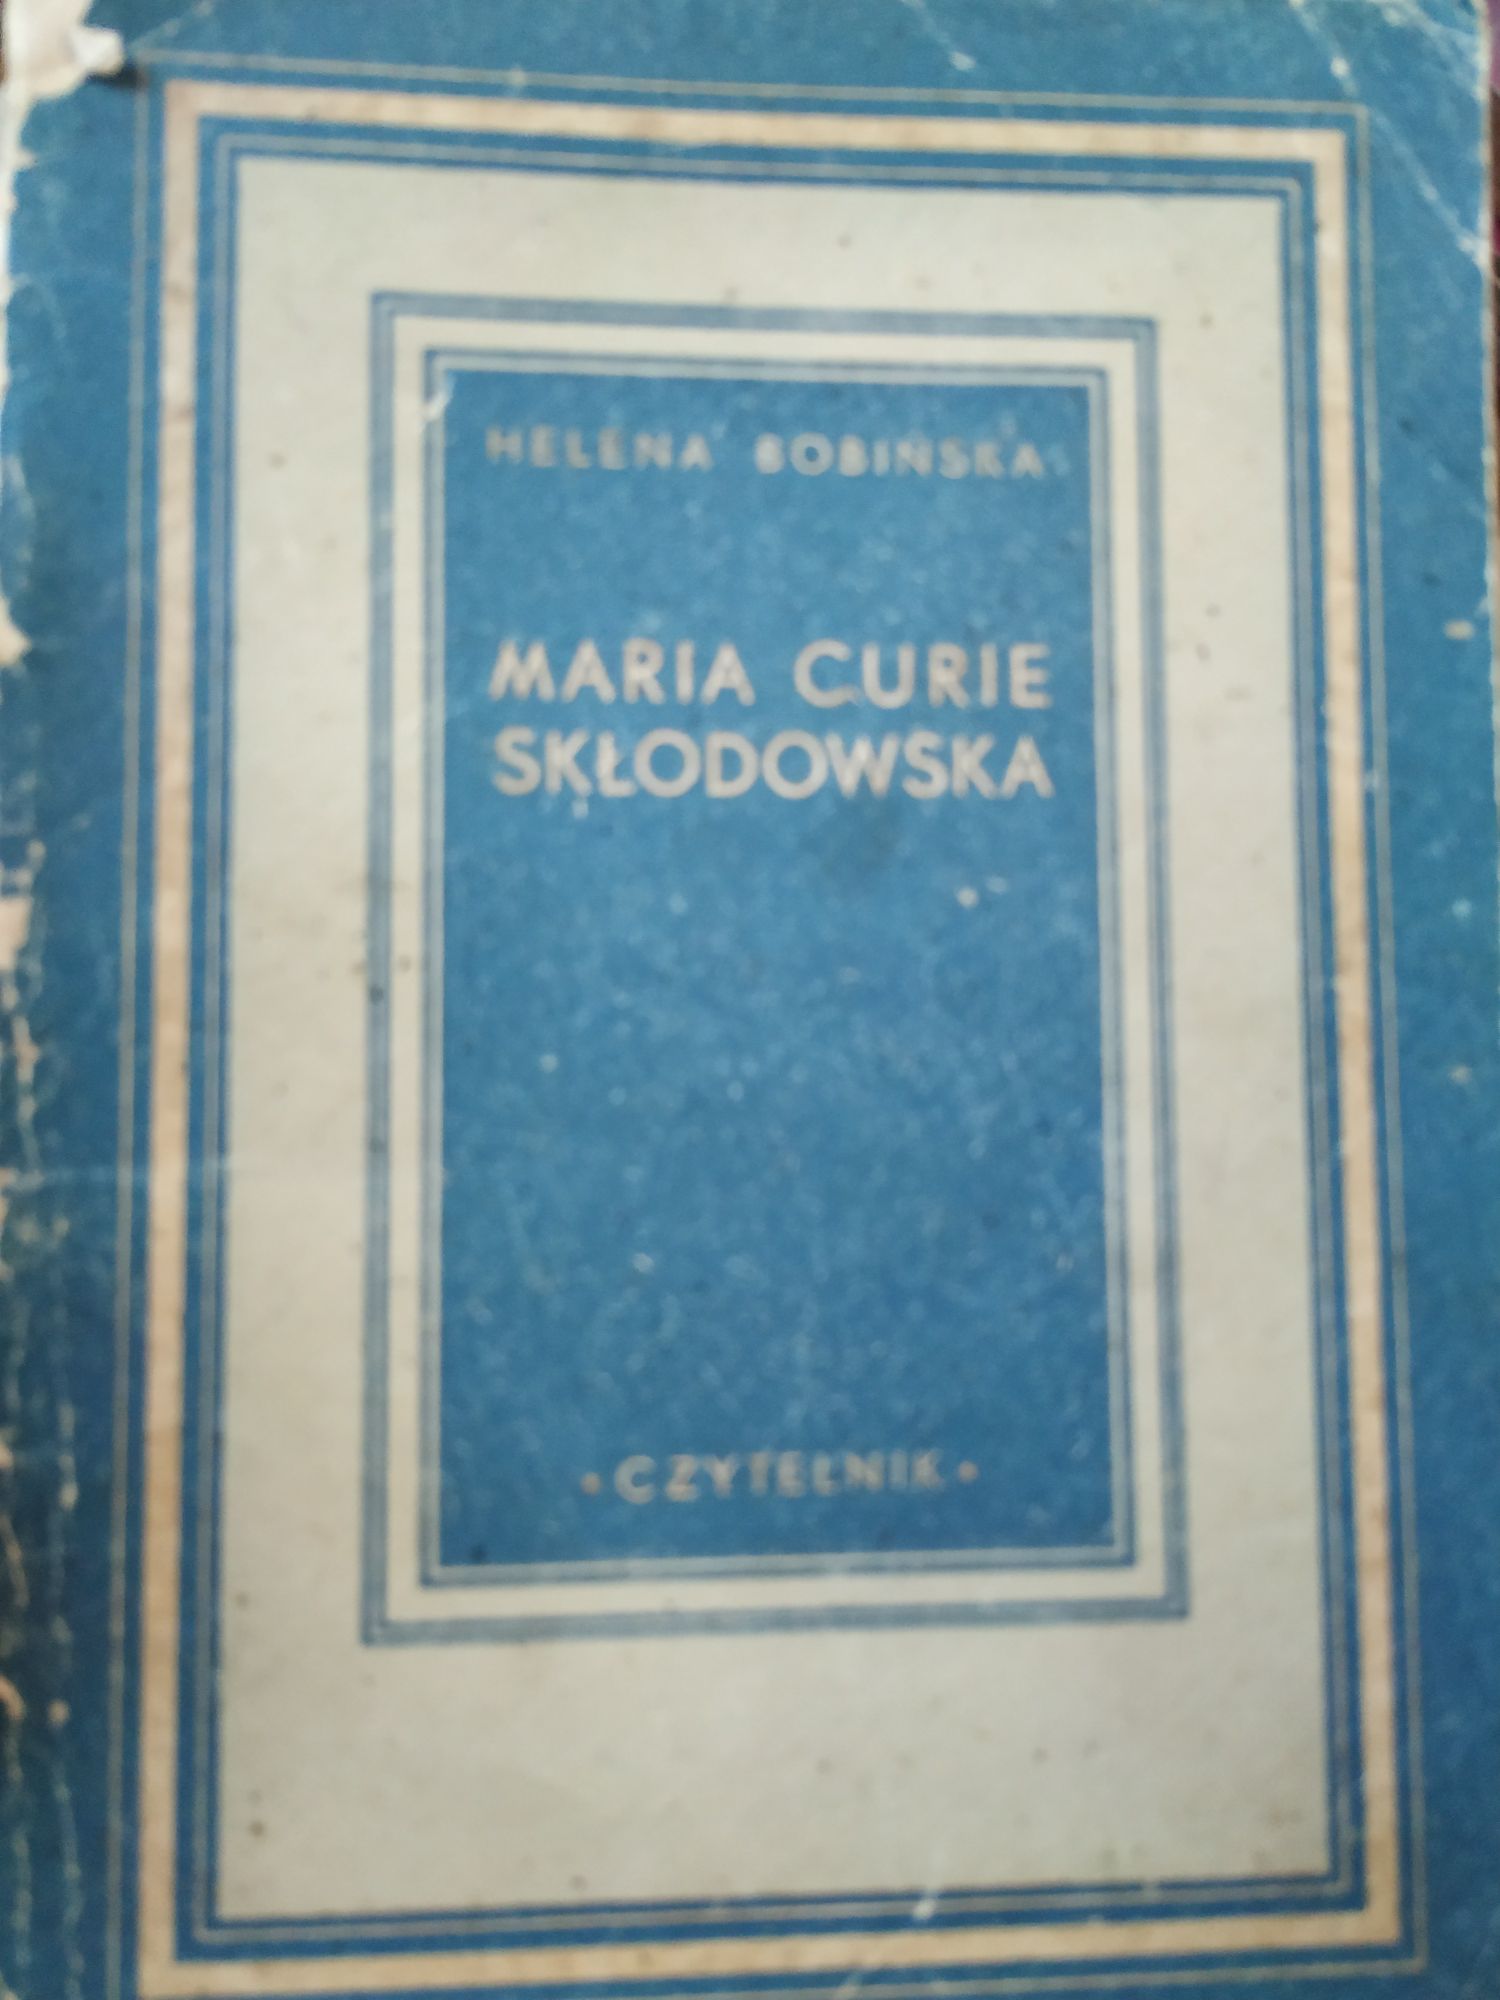 Leksykon gospodarstwa domowego Kisielewska oraz Maria Curie Skłodowska